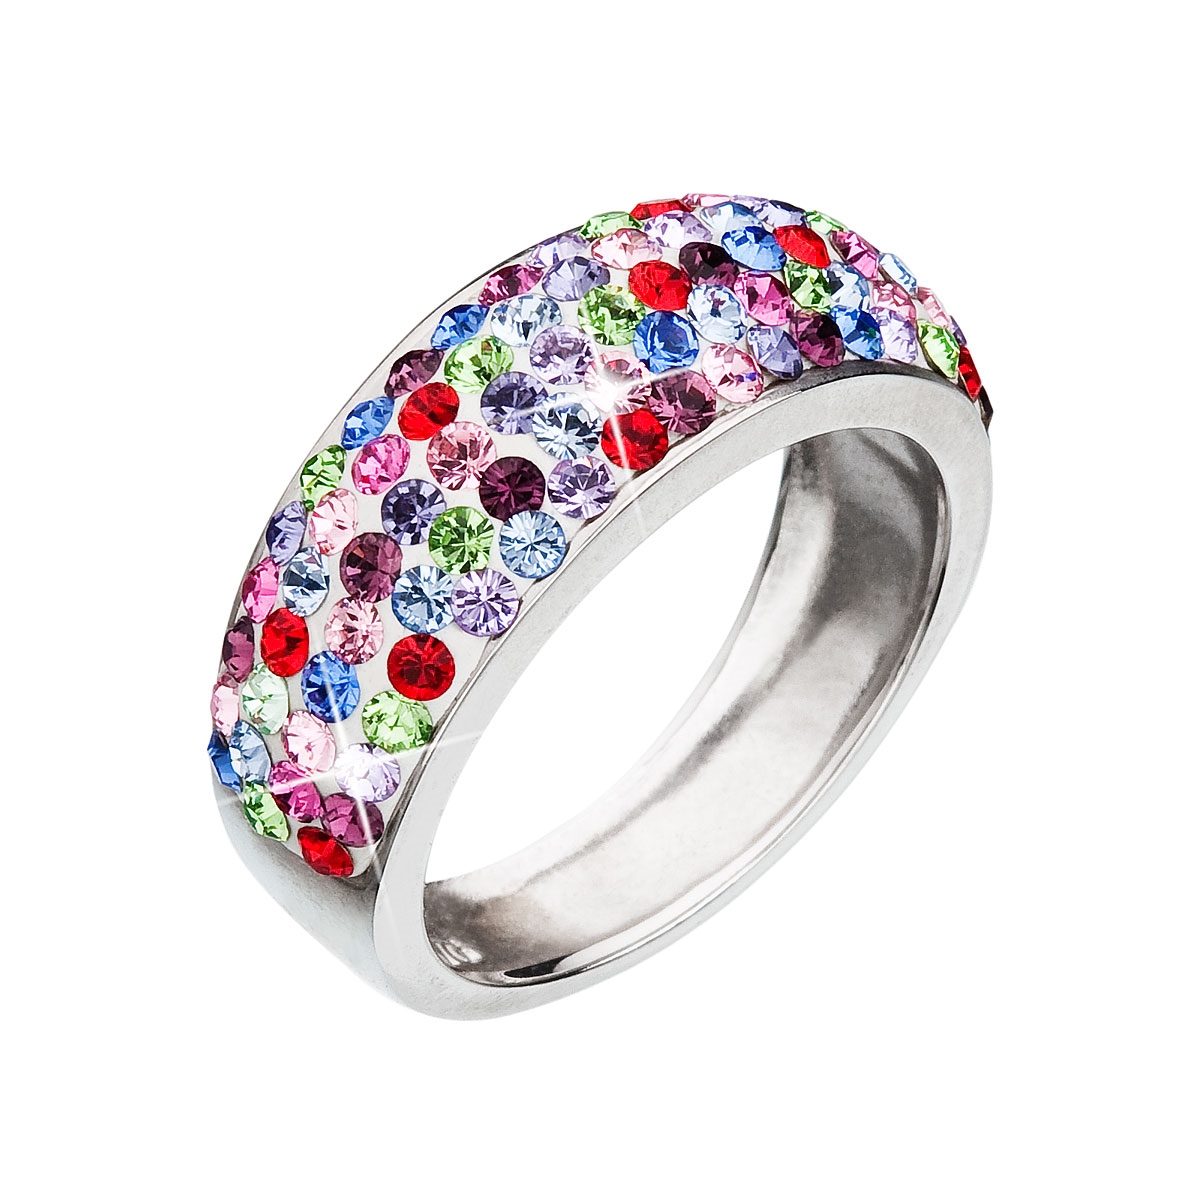 Strieborný prsteň s kryštálmi Crystals from Swarovski ®, Mix farieb